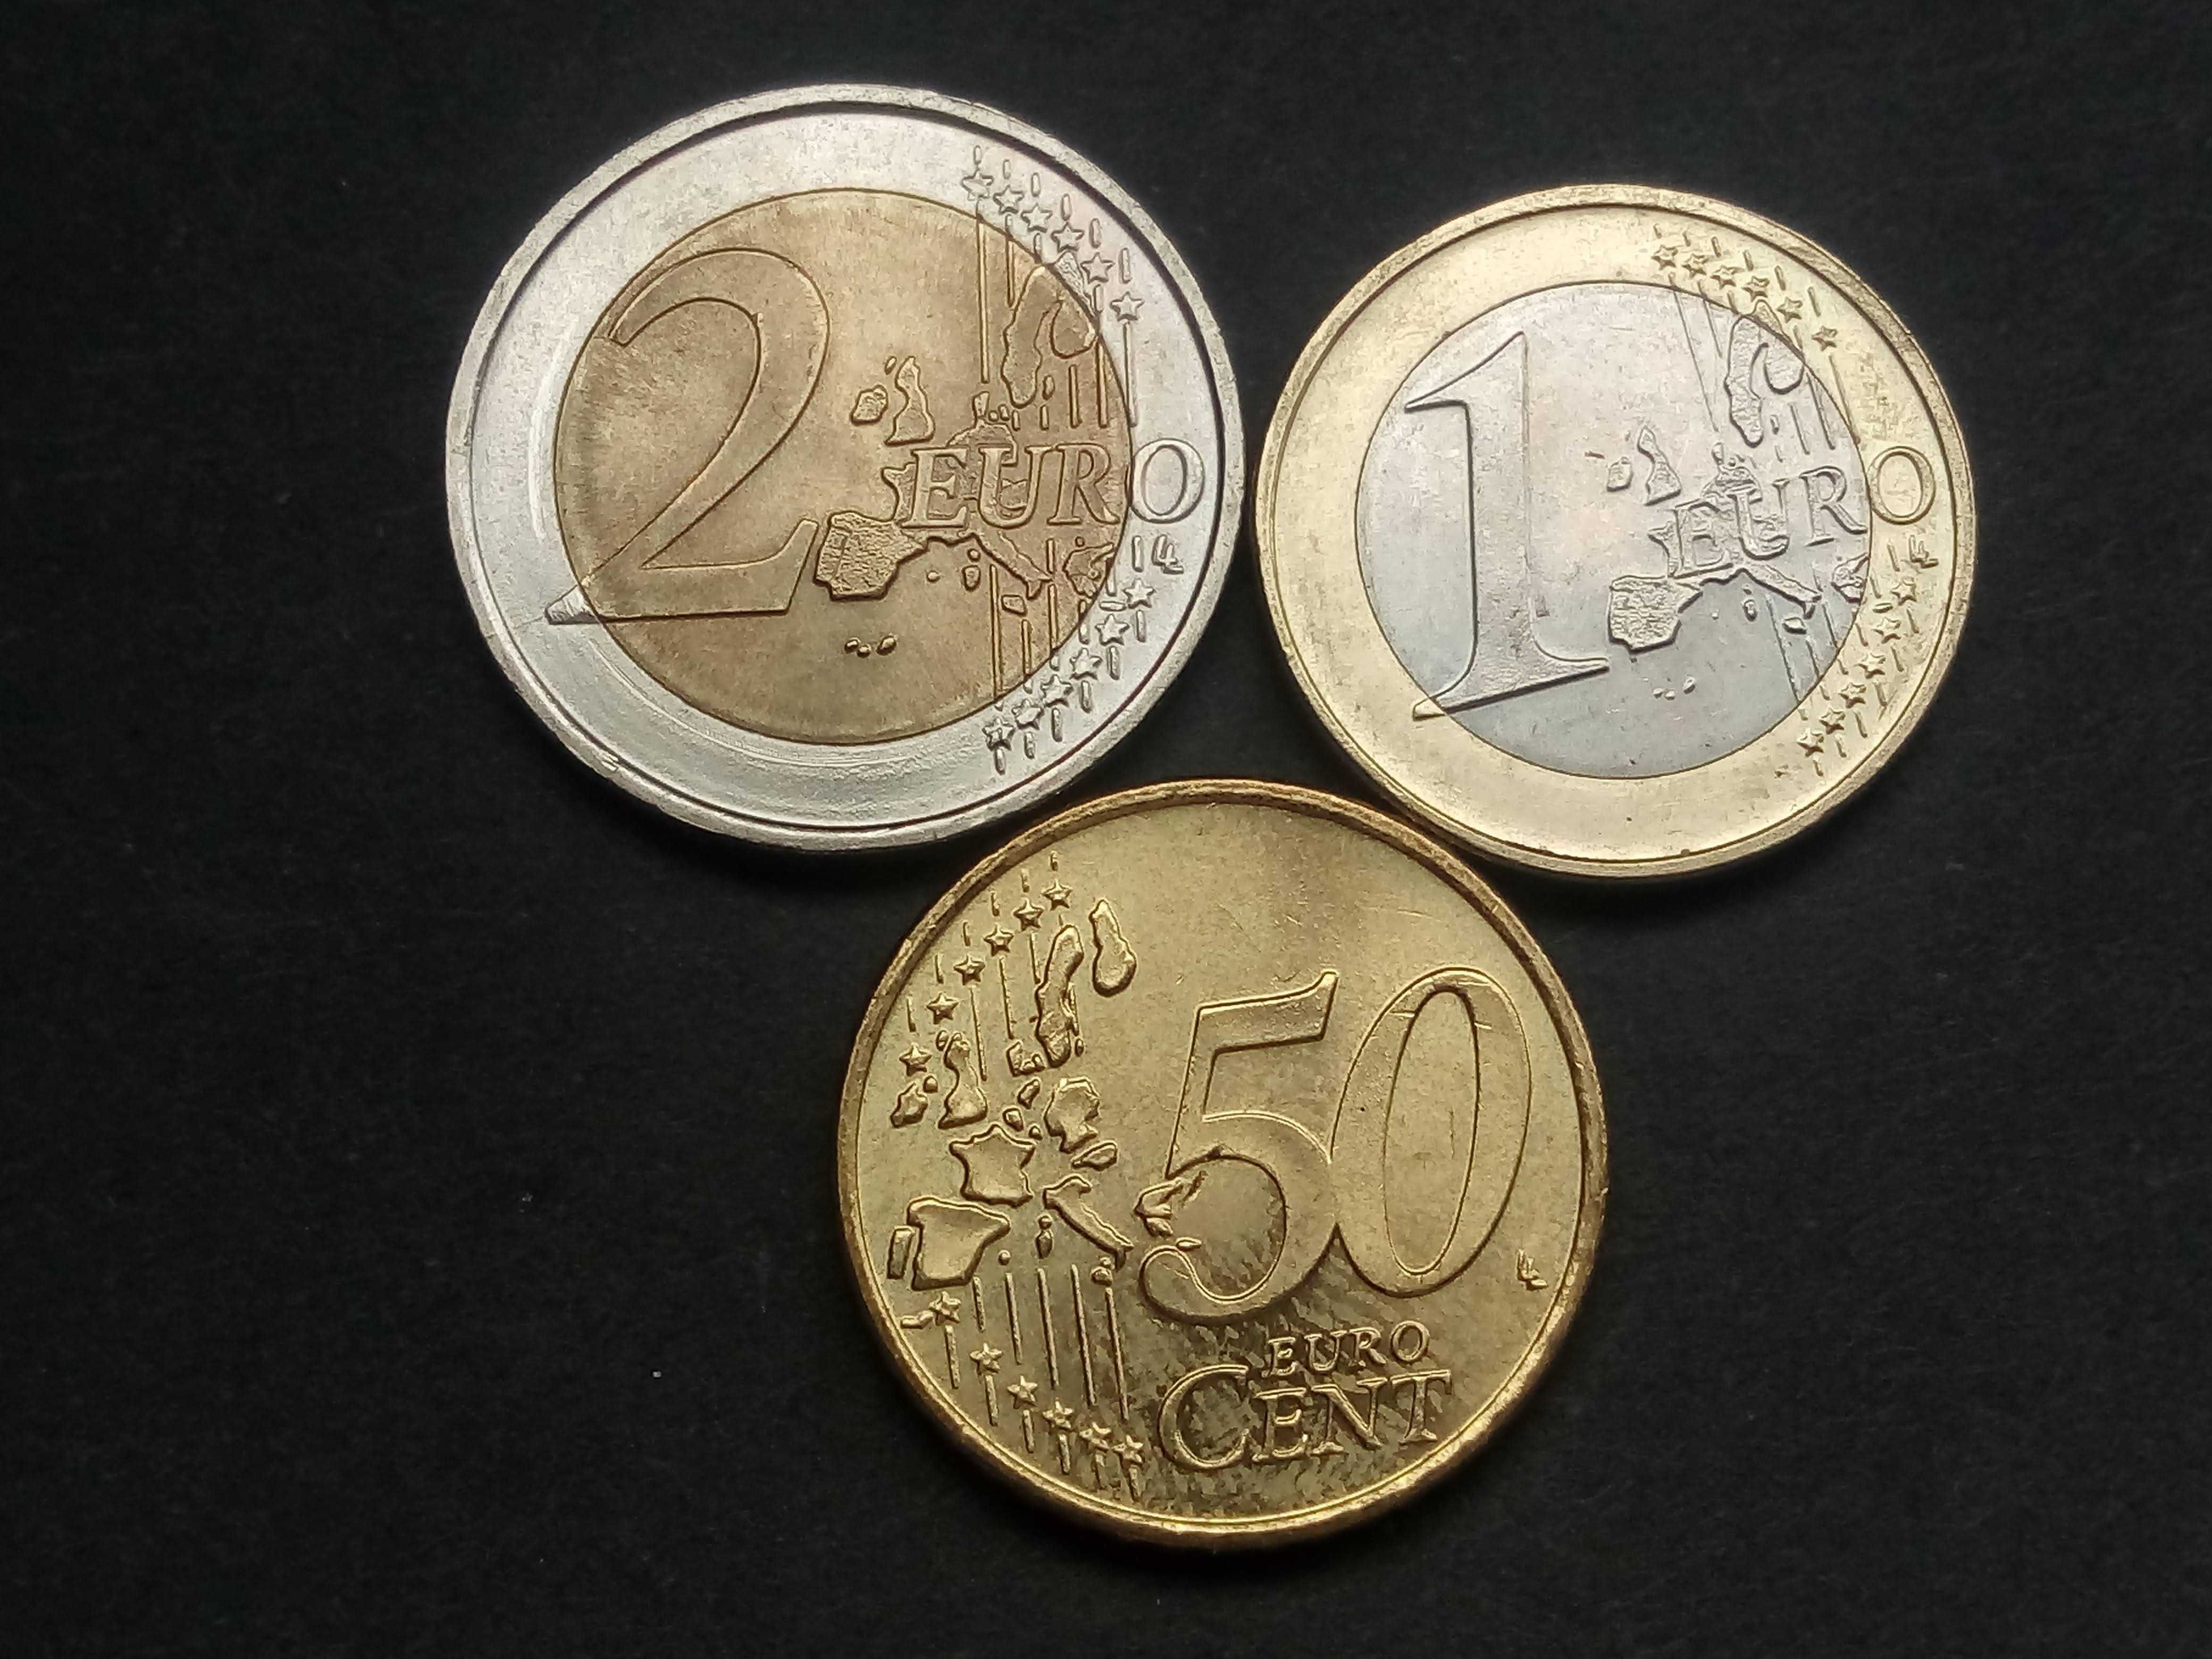 coleçâo completa de 8 moedas de Euros 2002 da Grécia novo preço